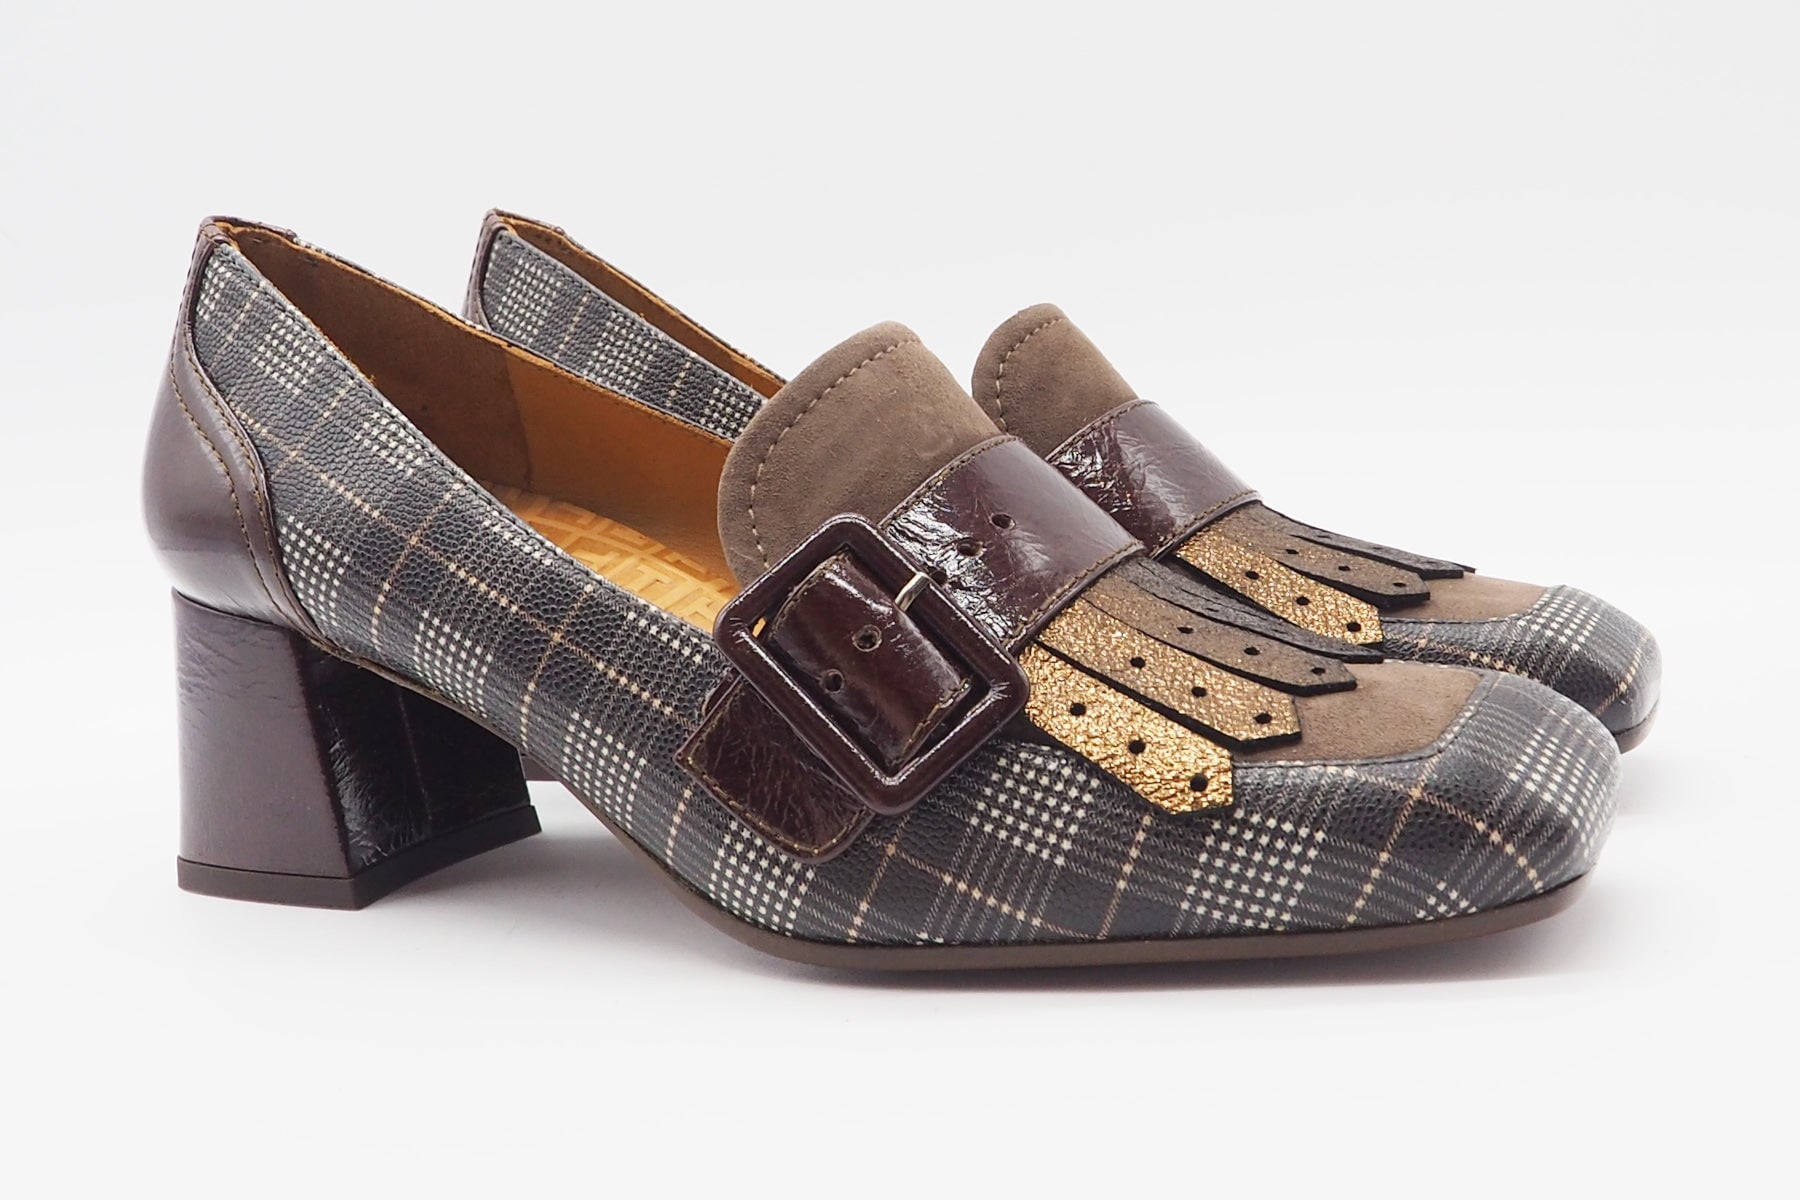 Damen Loafer aus bedrucktem Leder in Brauntönen - Absatz 5cm - Voyala Damen Loafers & Schnürer Chie Mihara 